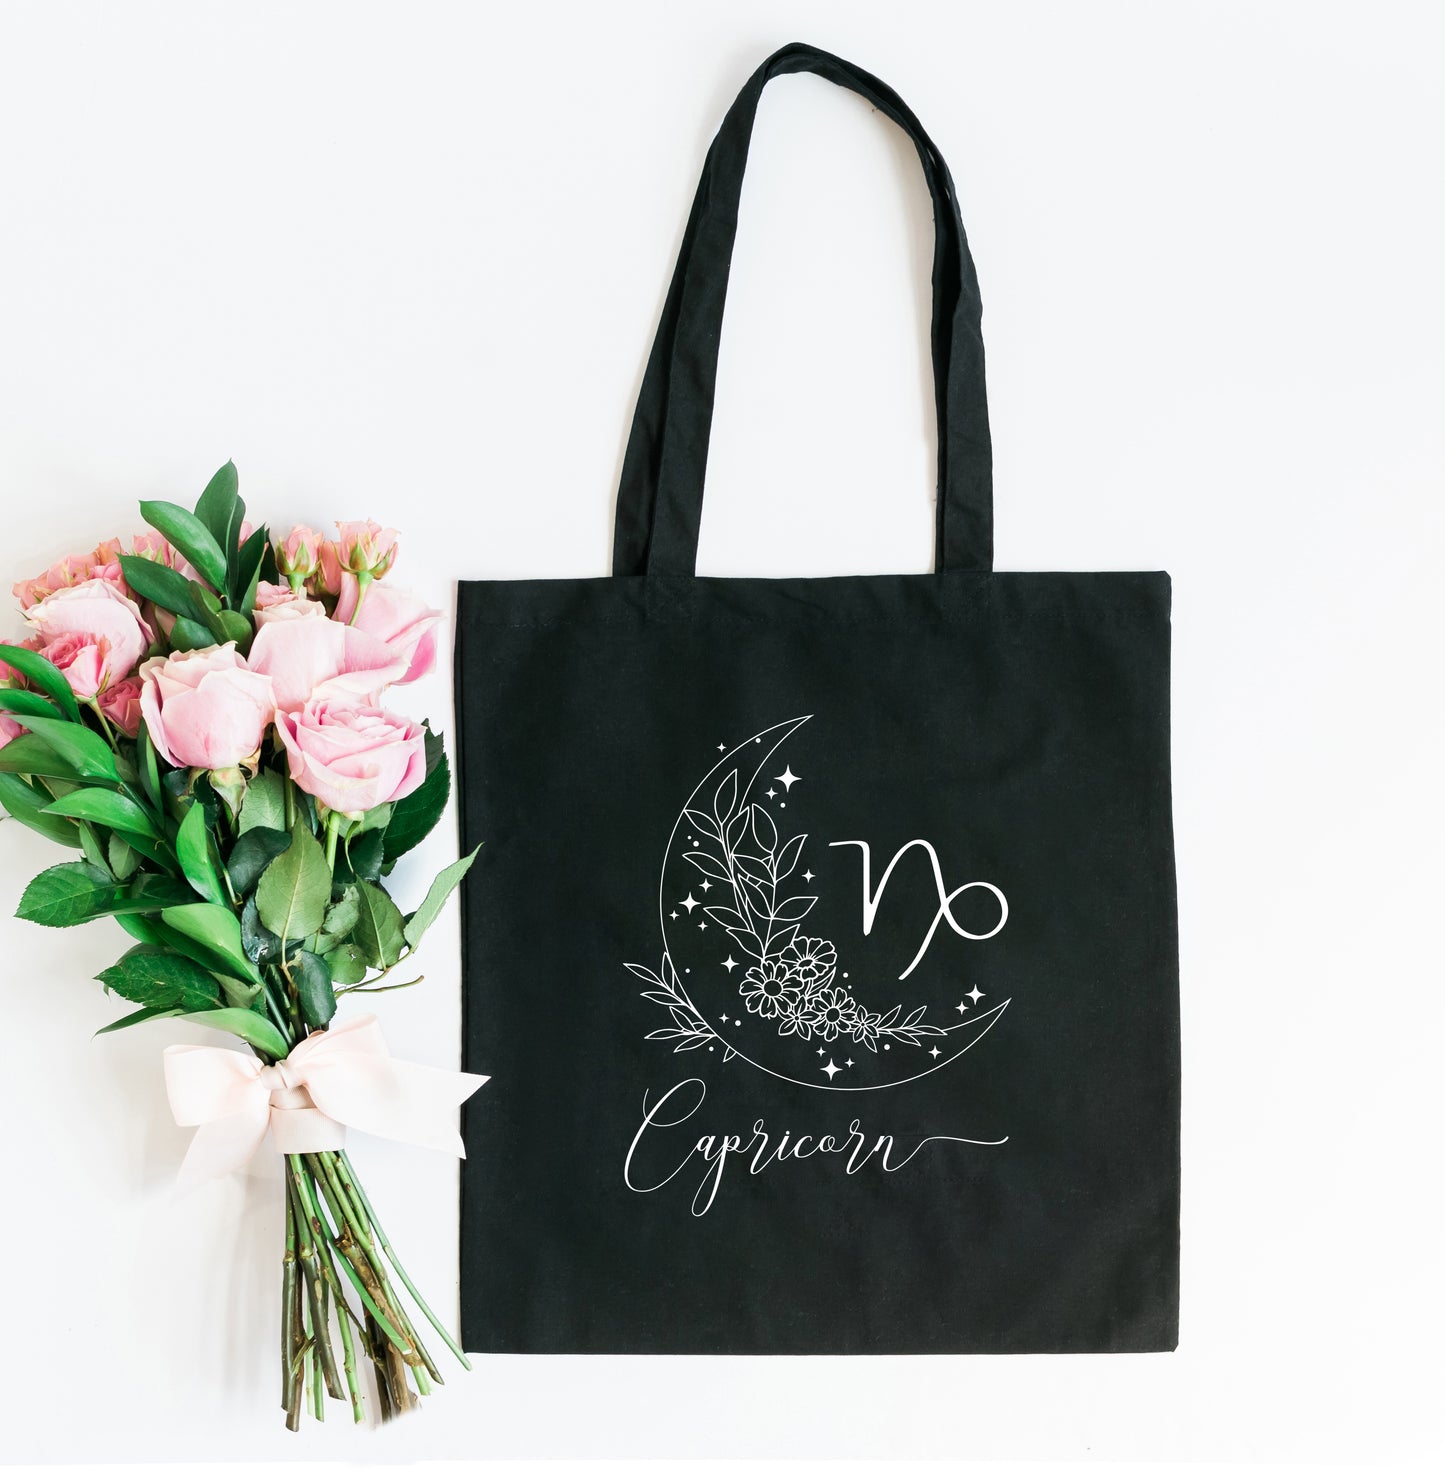 Capricorn Floral | Tote Bag